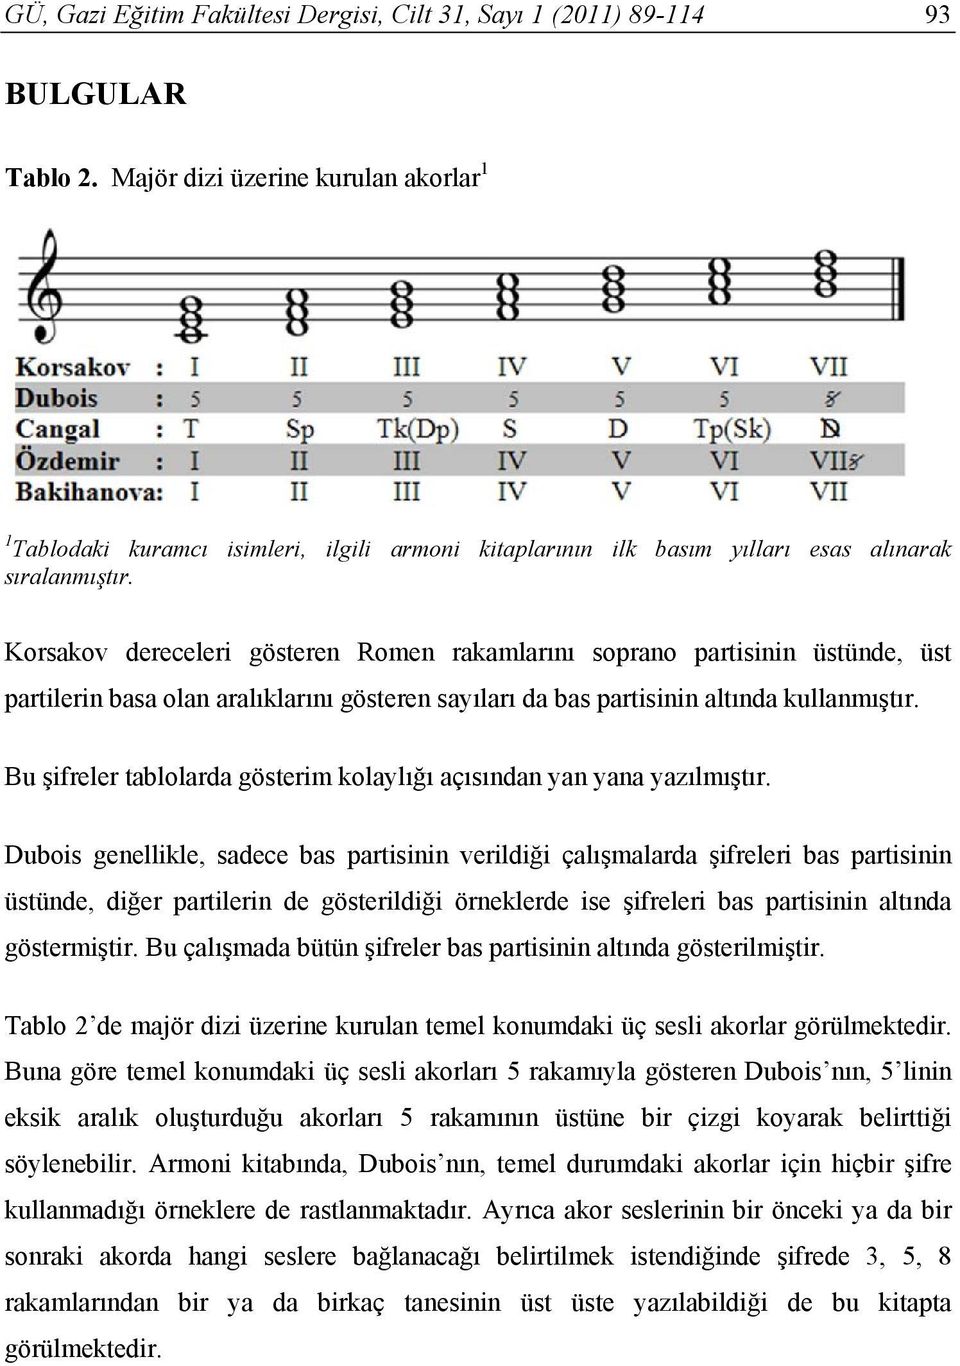 Korsakov dereceleri gösteren Romen rakamlarını soprano partisinin üstünde, üst partilerin basa olan aralıklarını gösteren sayıları da bas partisinin altında kullanmıştır.